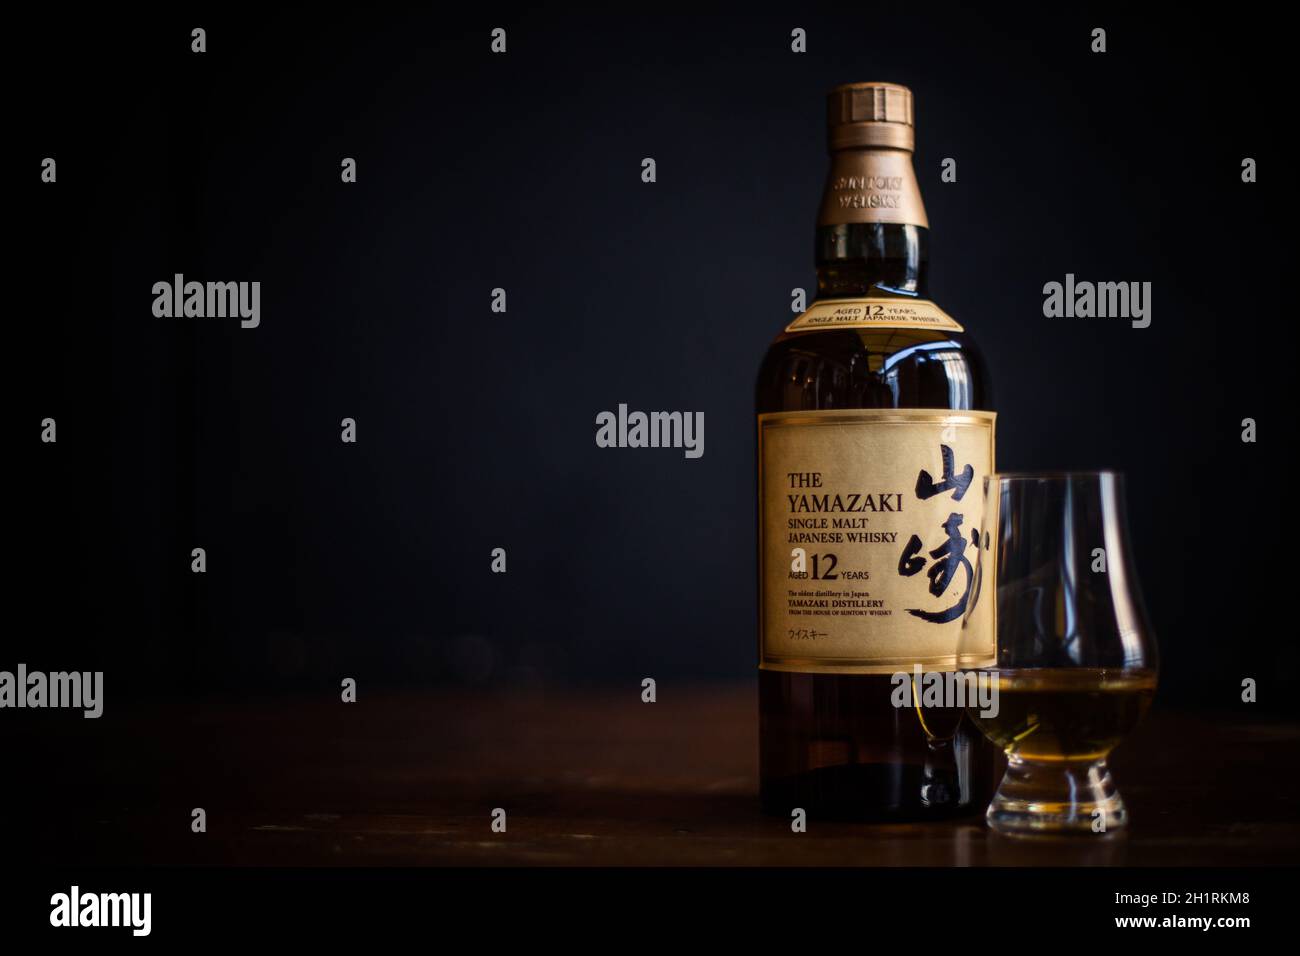 Bucarest, Romania - 25 febbraio 2021: Immagine editoriale illustrativa di una bottiglia di whisky giapponese al malto singolo Yamazaki e di un bicchiere di whisky Glencairn Foto Stock